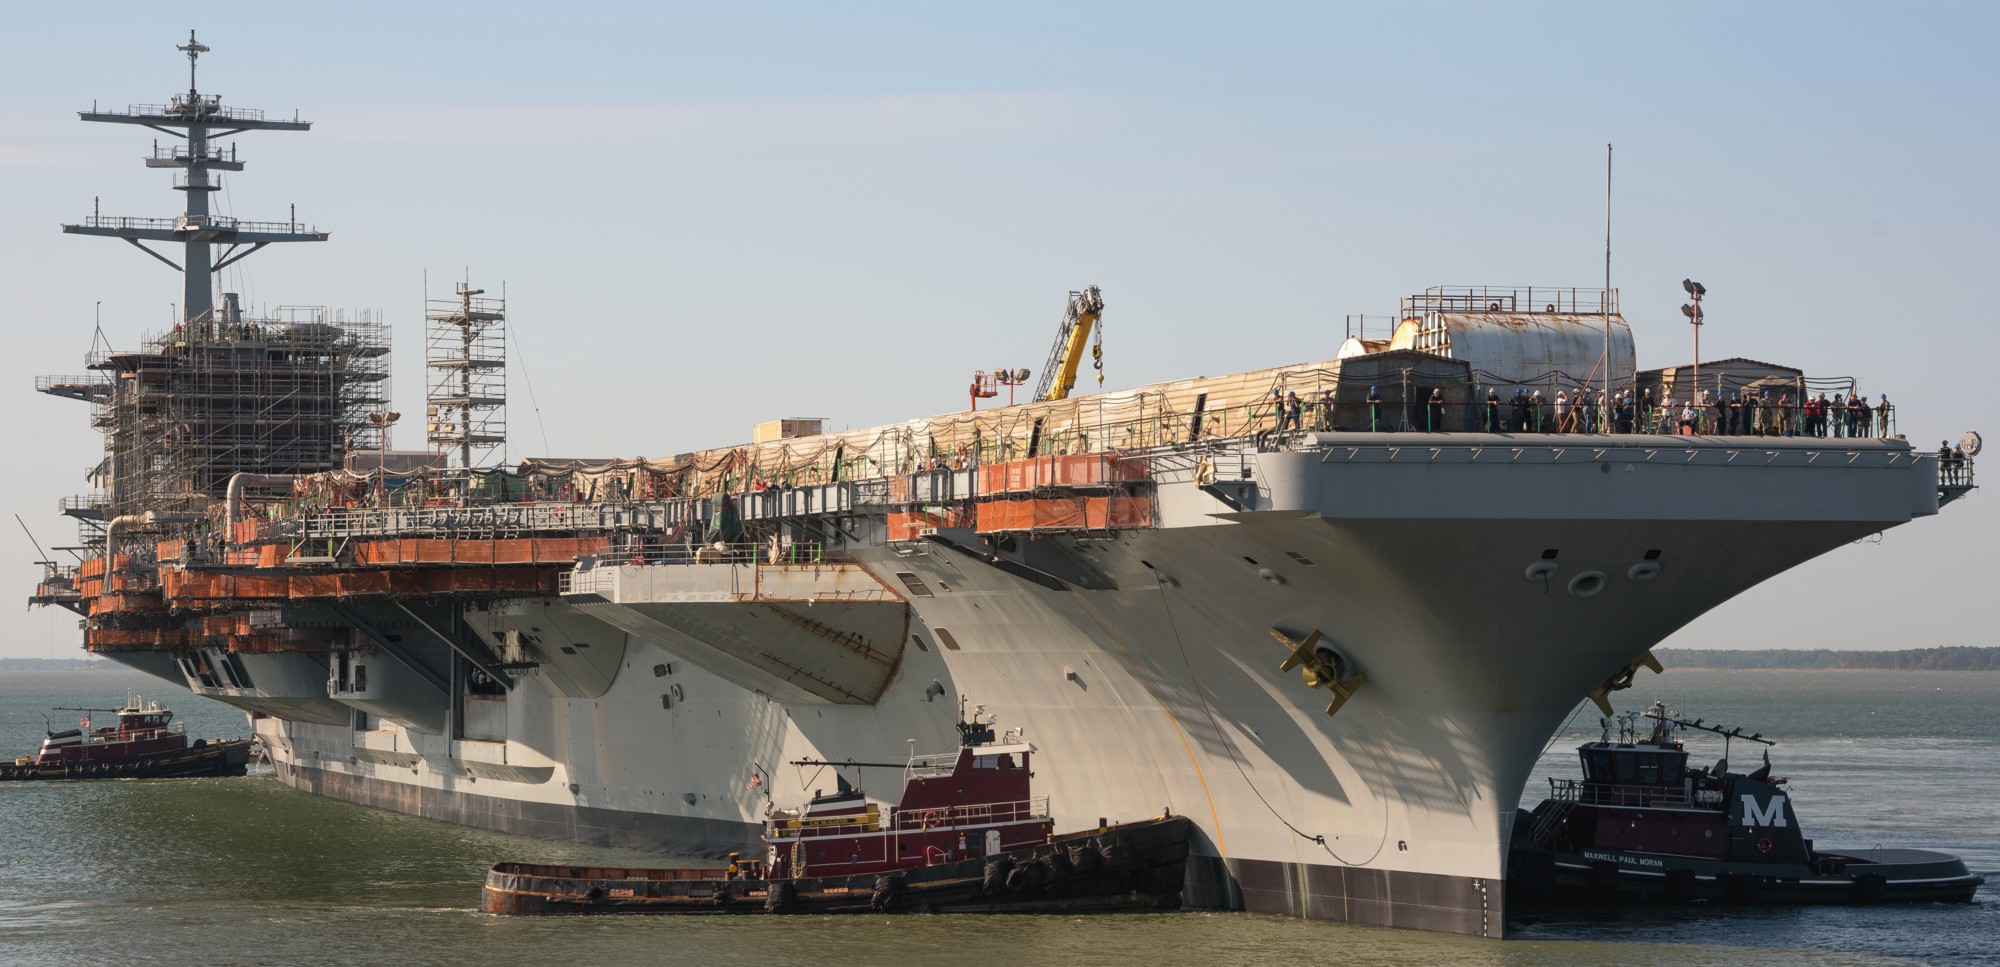 cvn-73 uss george washington nimitz class aircraft carrier refueling complex overhaul rcoh newport news virginia 134